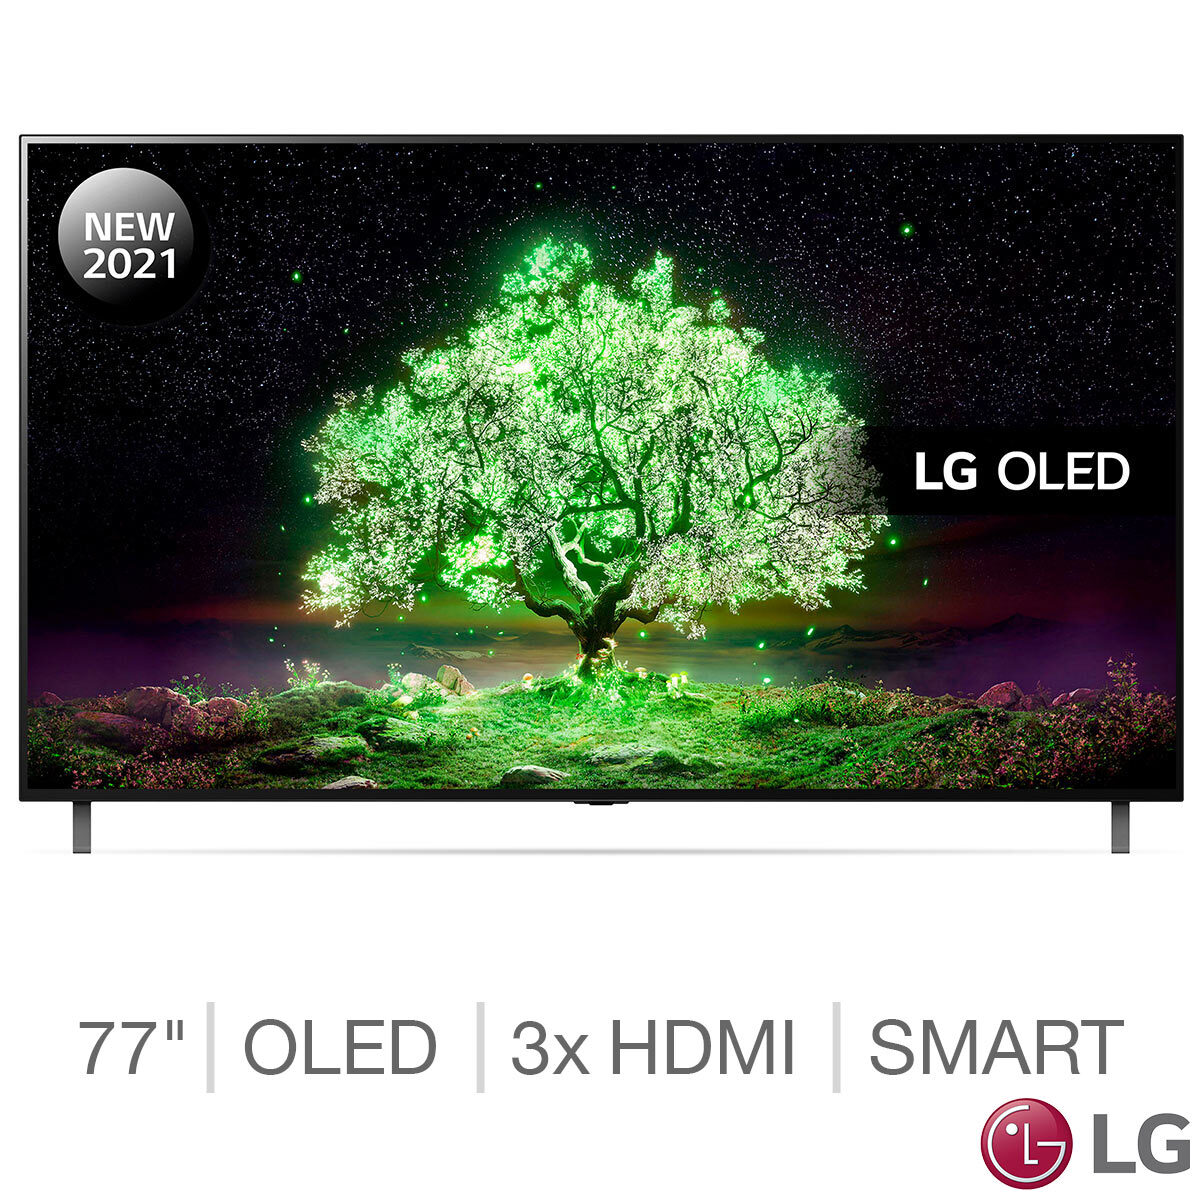 Buy LG OLED77A16LA 77 Inch OLED 4K Ultra HD Smart TV at costco.co.uk